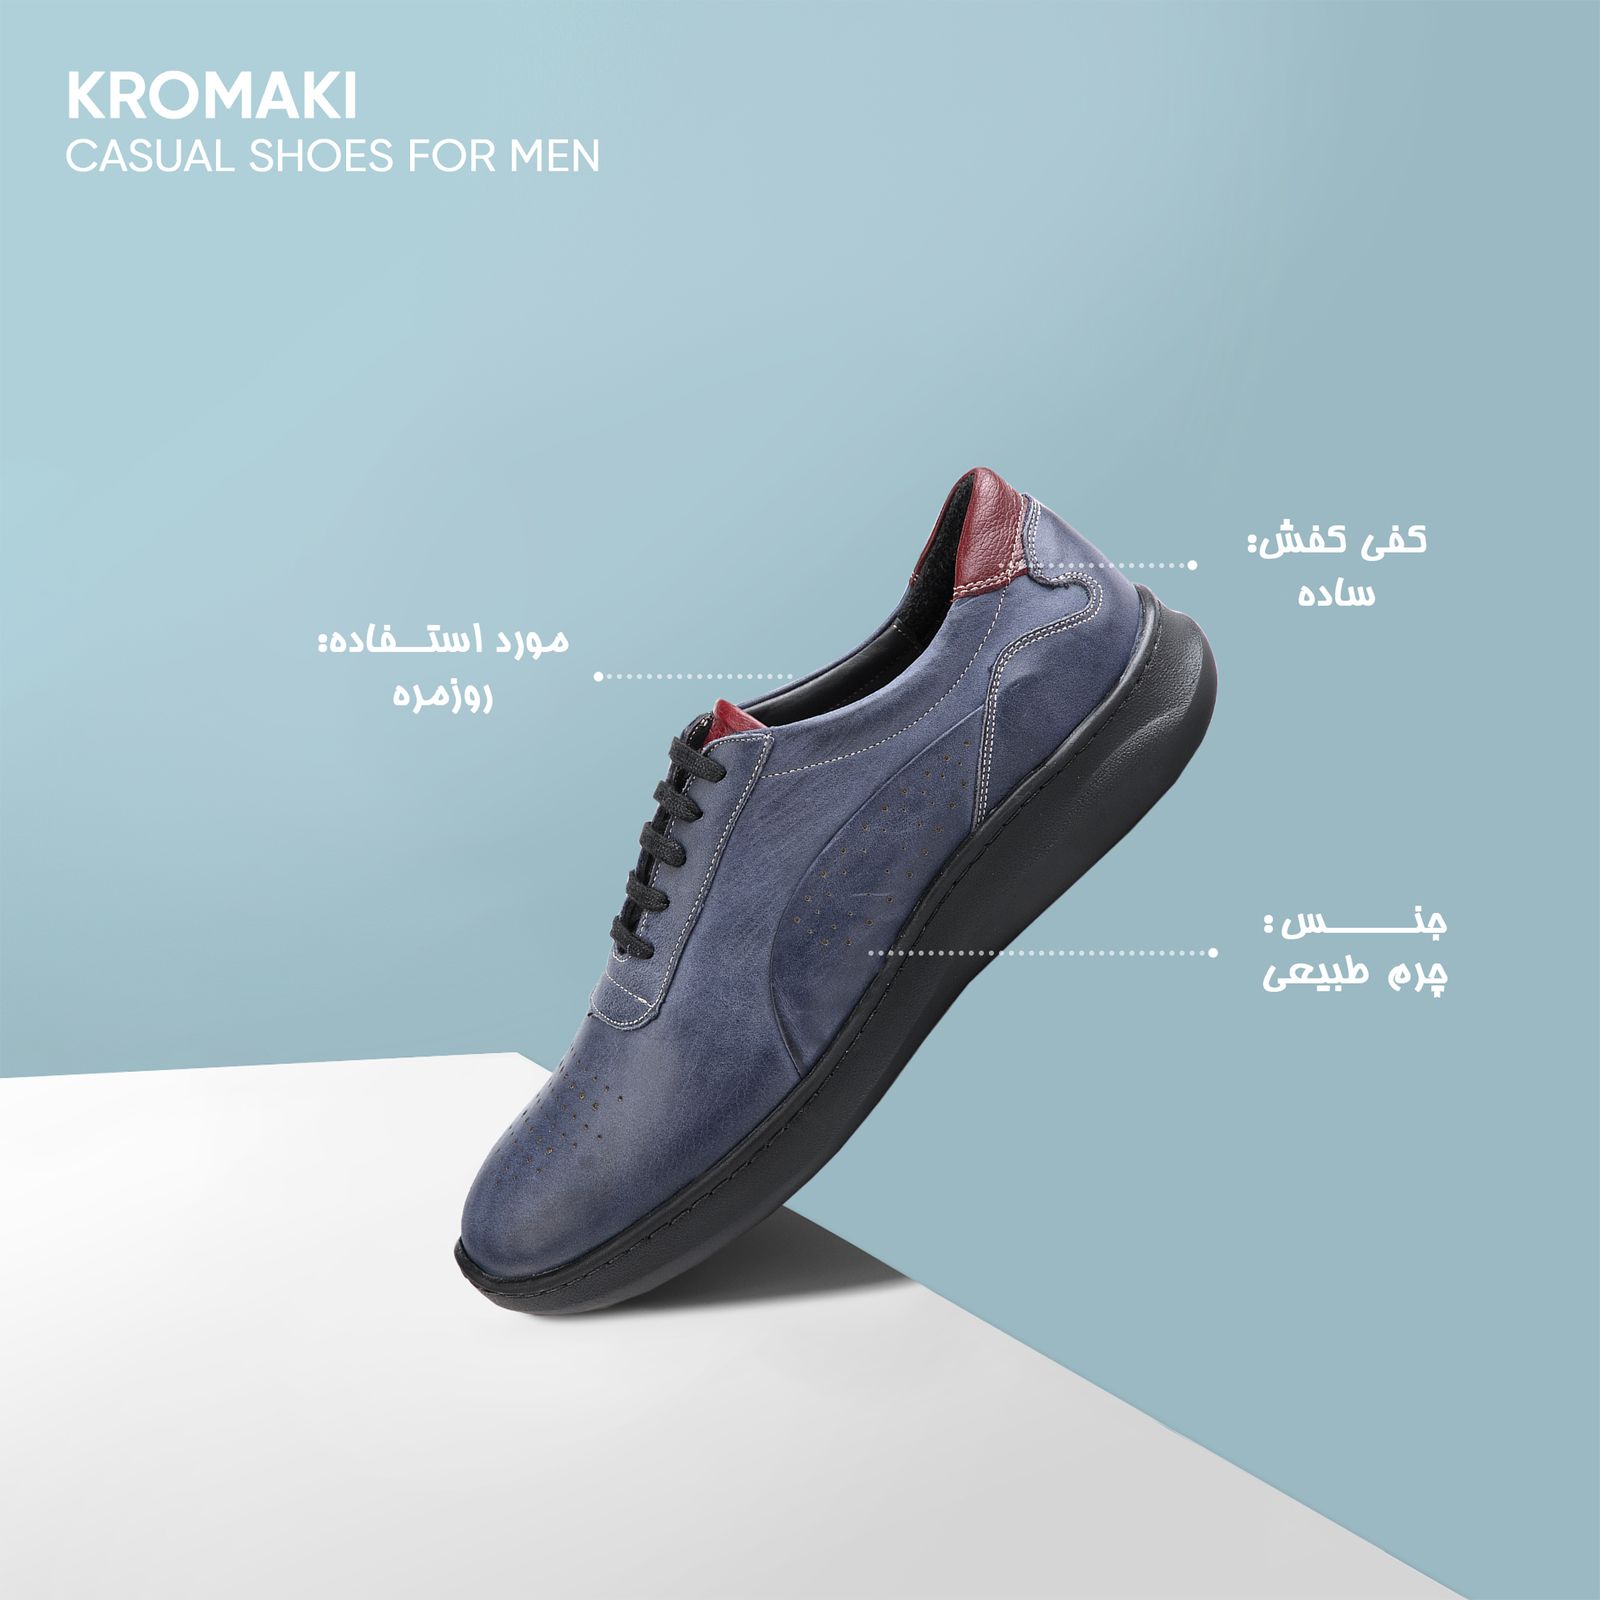 کفش روزمره مردانه کروماکی مدل KM11565 -  - 7